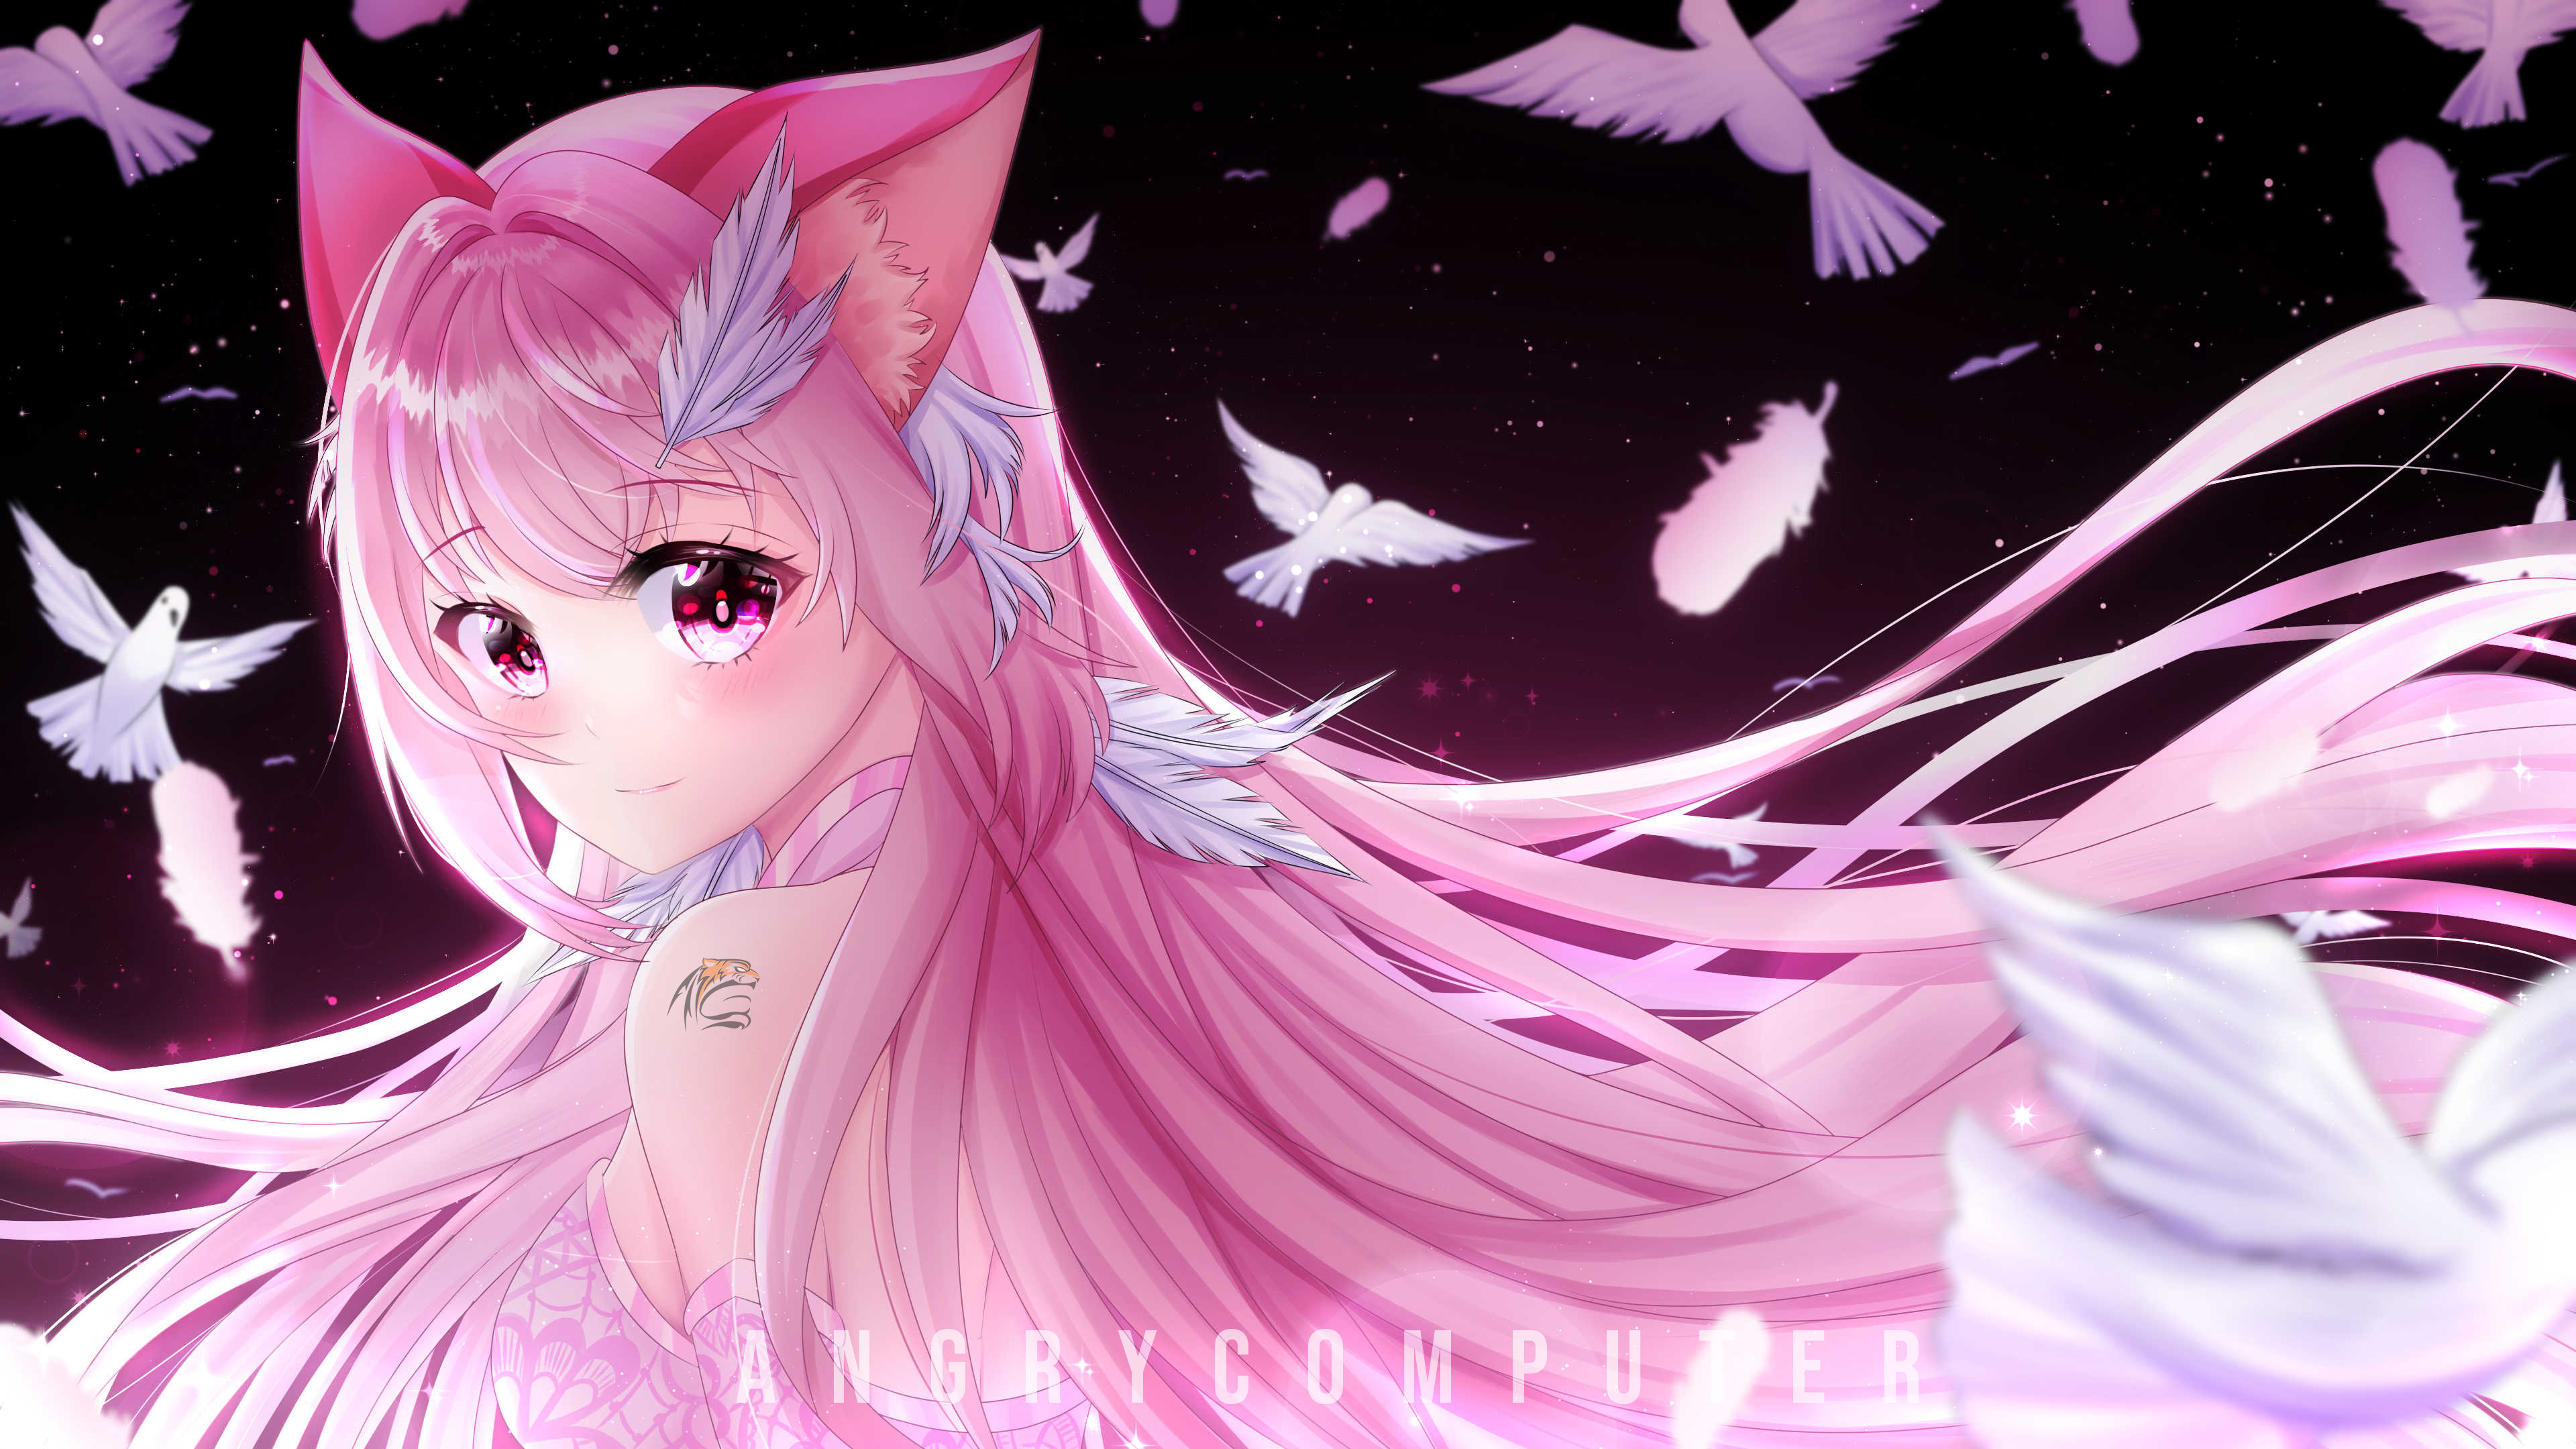 ArtStation - Anime pinky cat girl